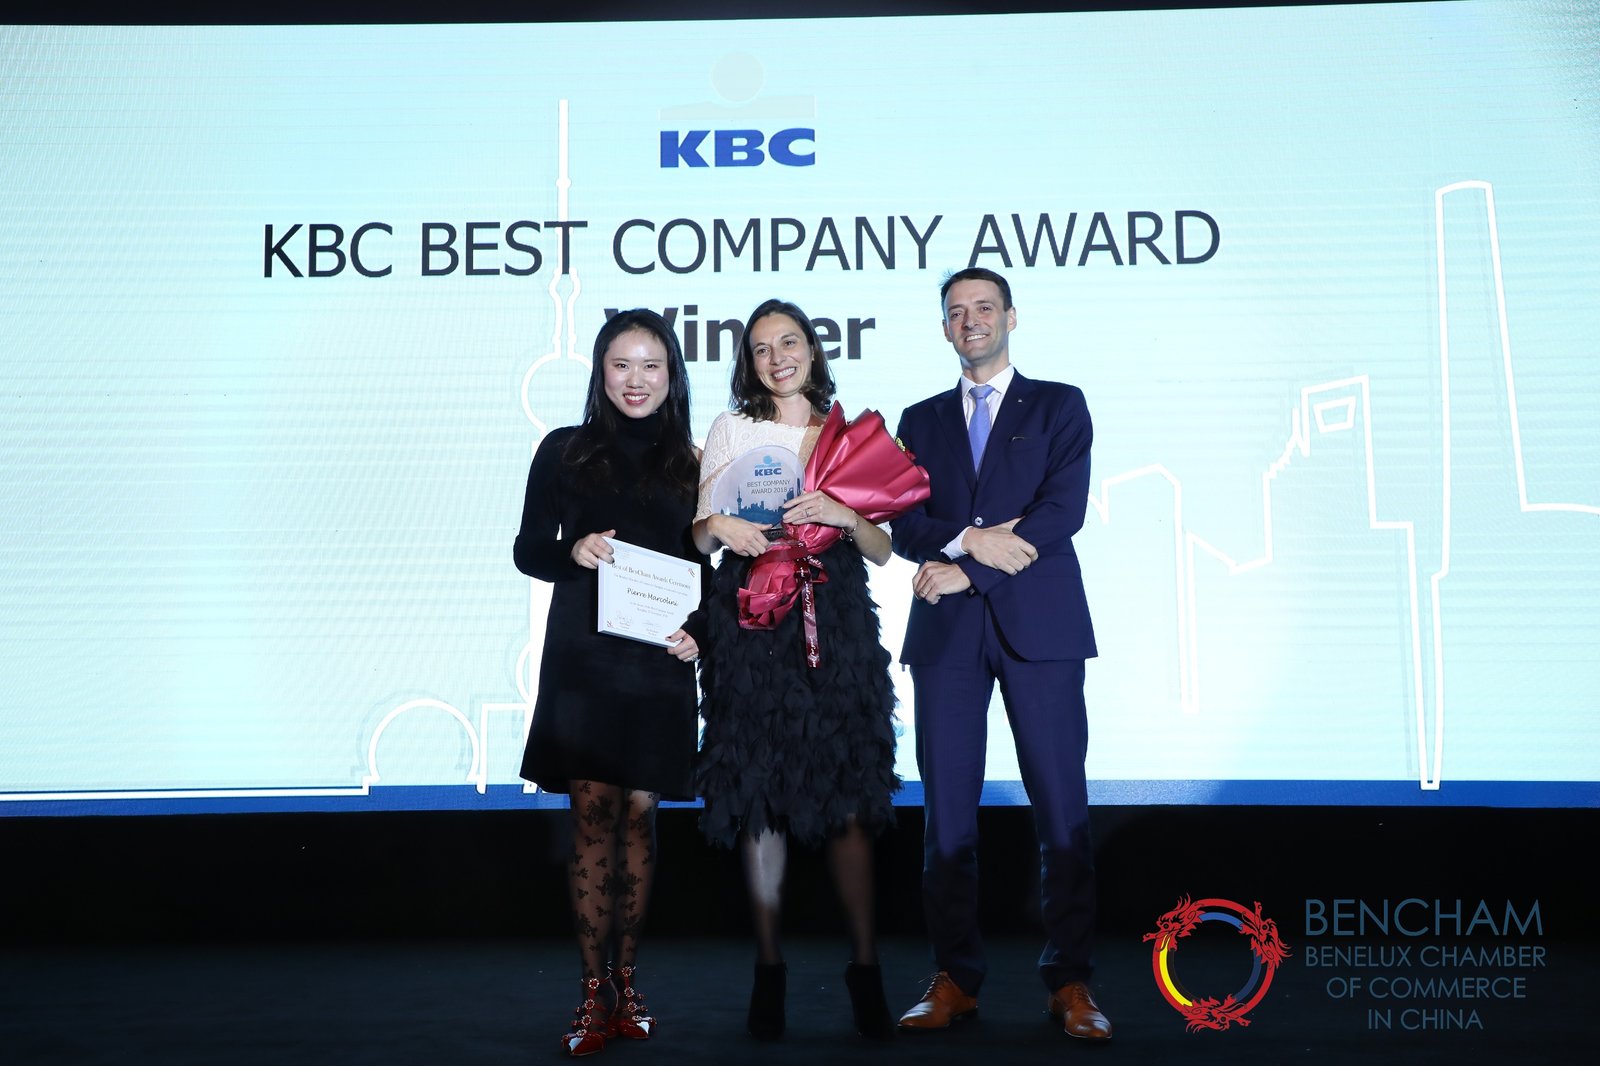 KBC Best Company Award Winner - Maison Pierre Marcolini